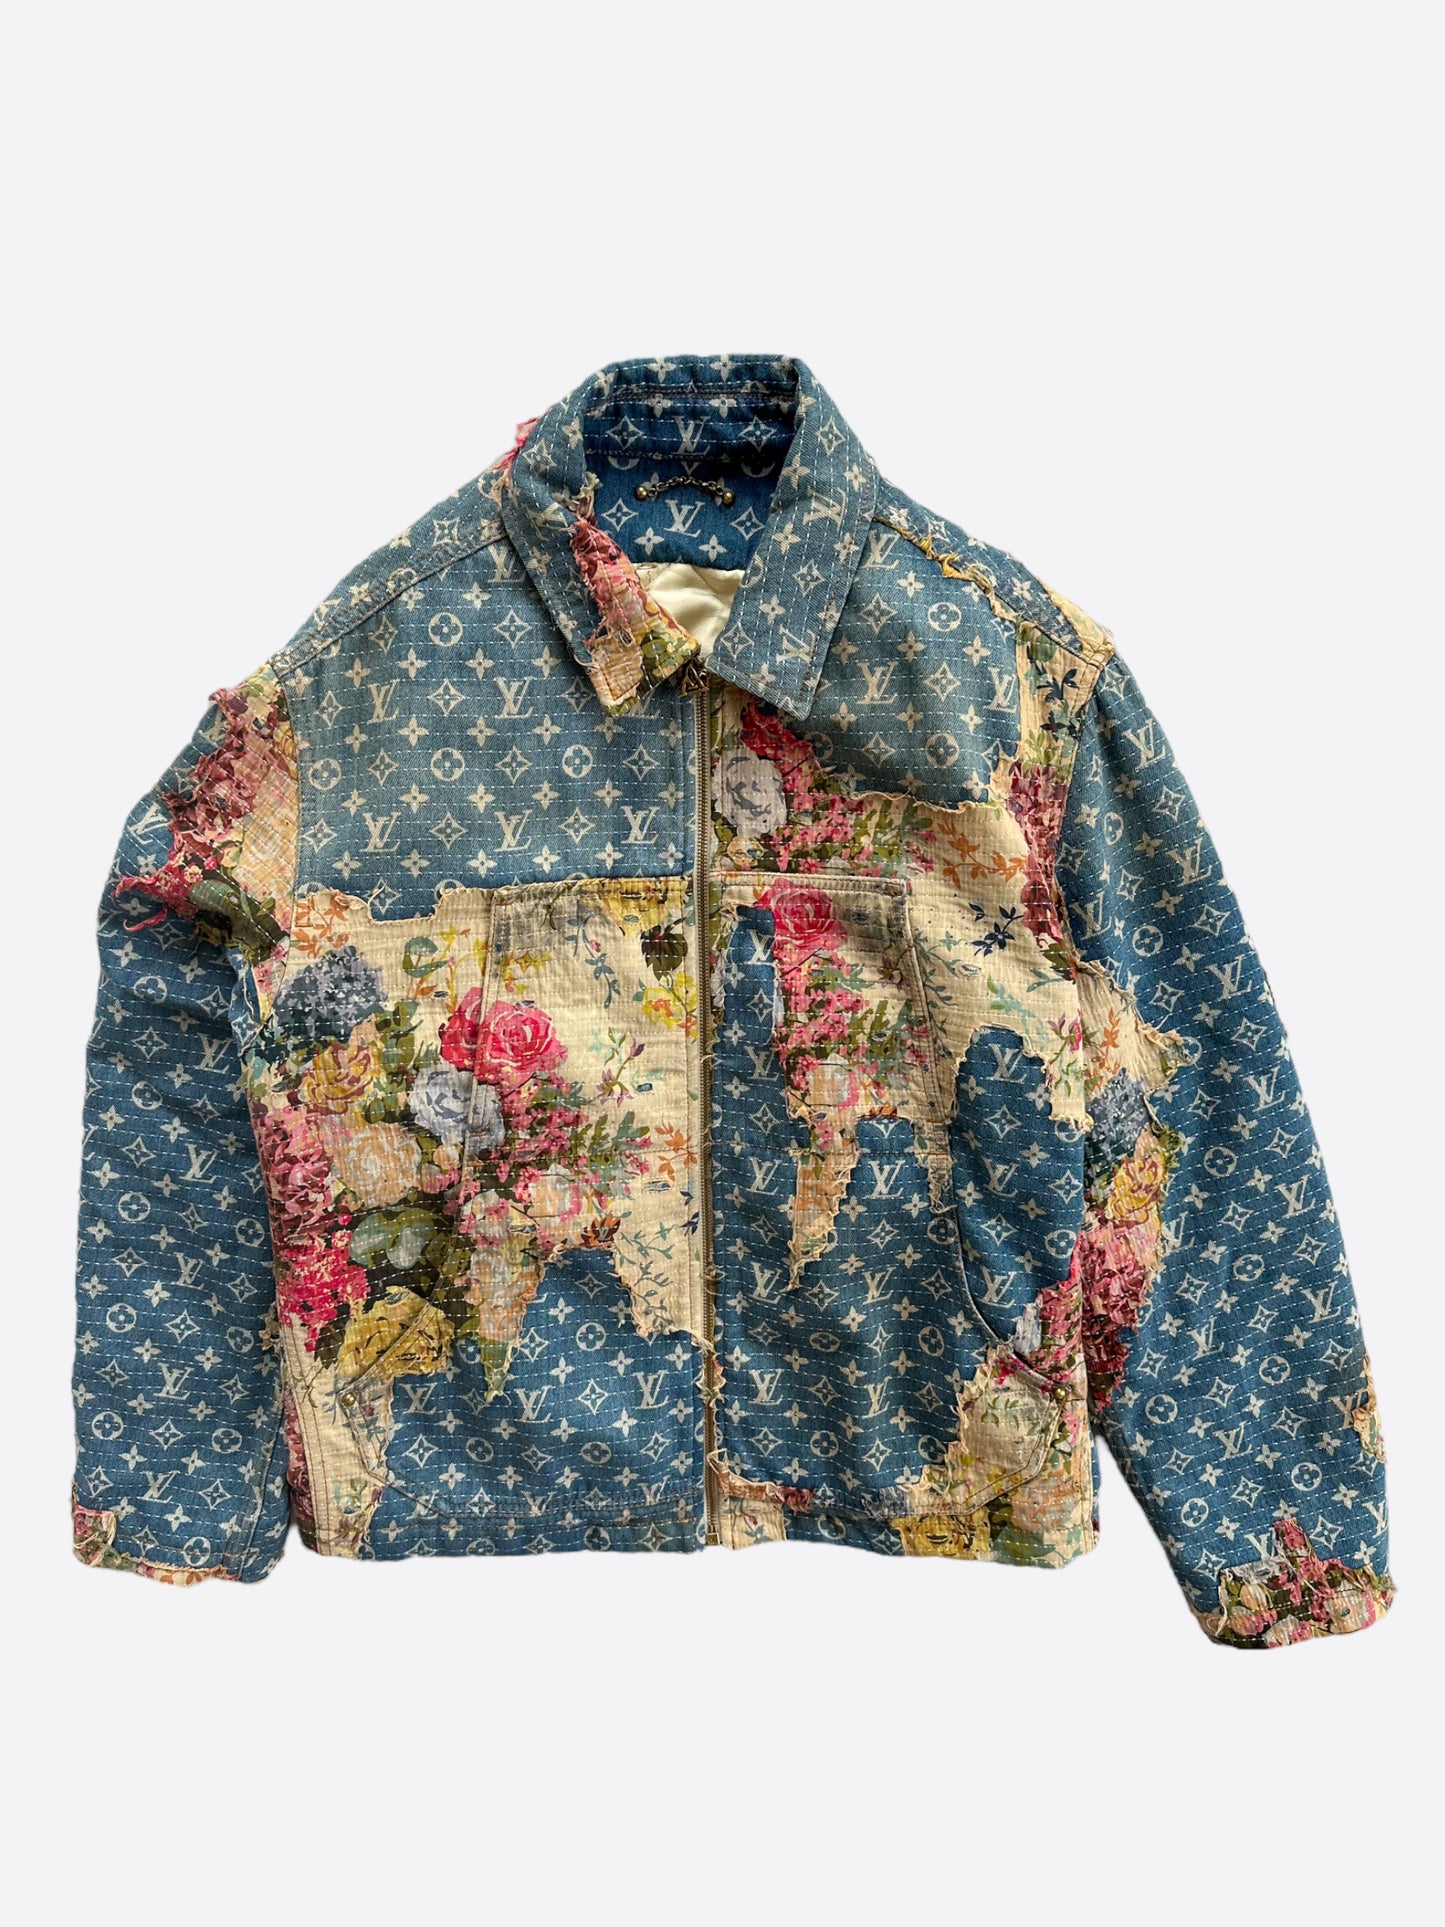 Louis Vuitton Blue Denim Coats, Jackets & Vests for Men for Sale